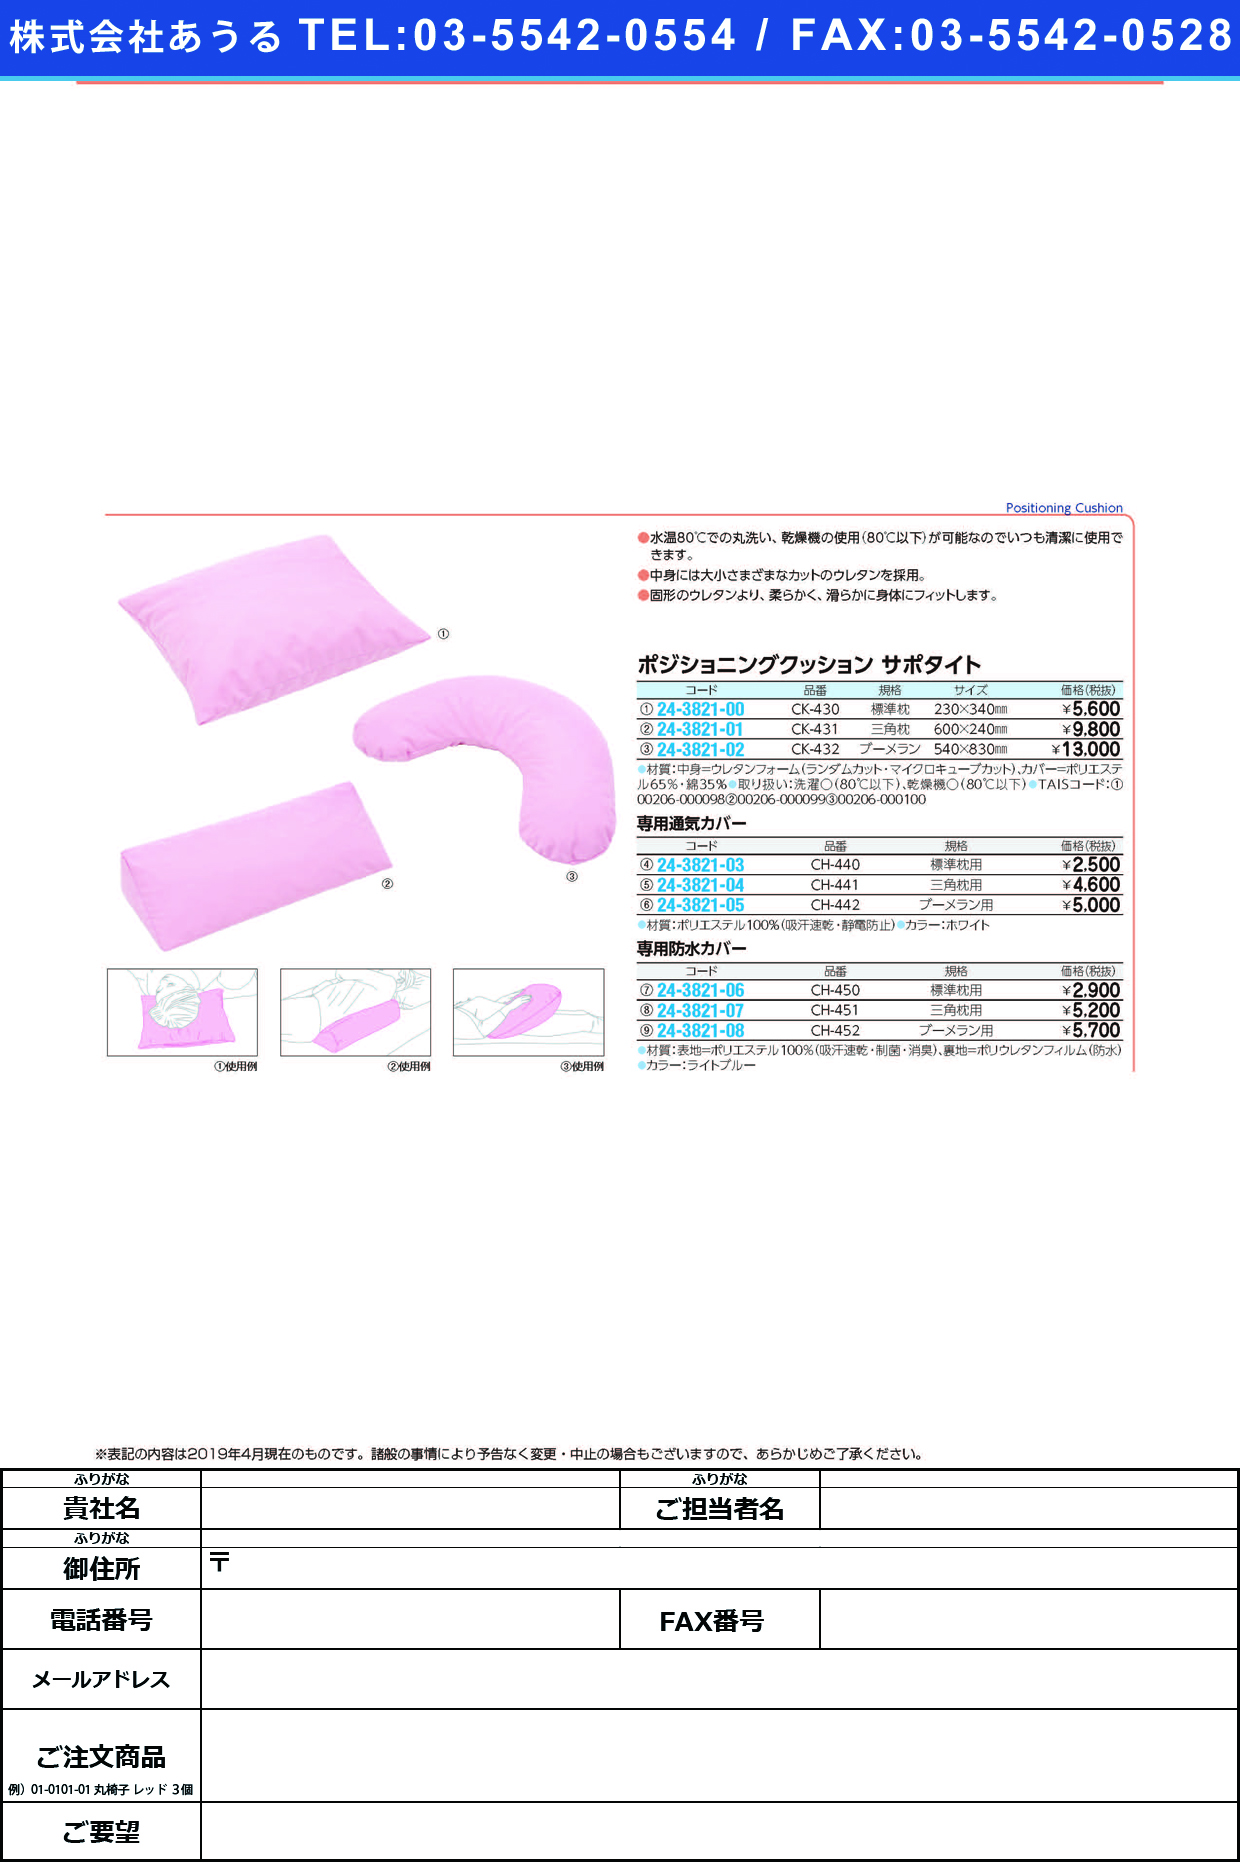 (24-3821-06)サポタイト用防水カバー CH-450(ﾋｮｳｼﾞｭﾝﾏｸﾗﾖｳ) ｻﾎﾟﾀｲﾄﾖｳﾎﾞｳｽｲｶﾊﾞｰ(ケープ)【1個単位】【2019年カタログ商品】